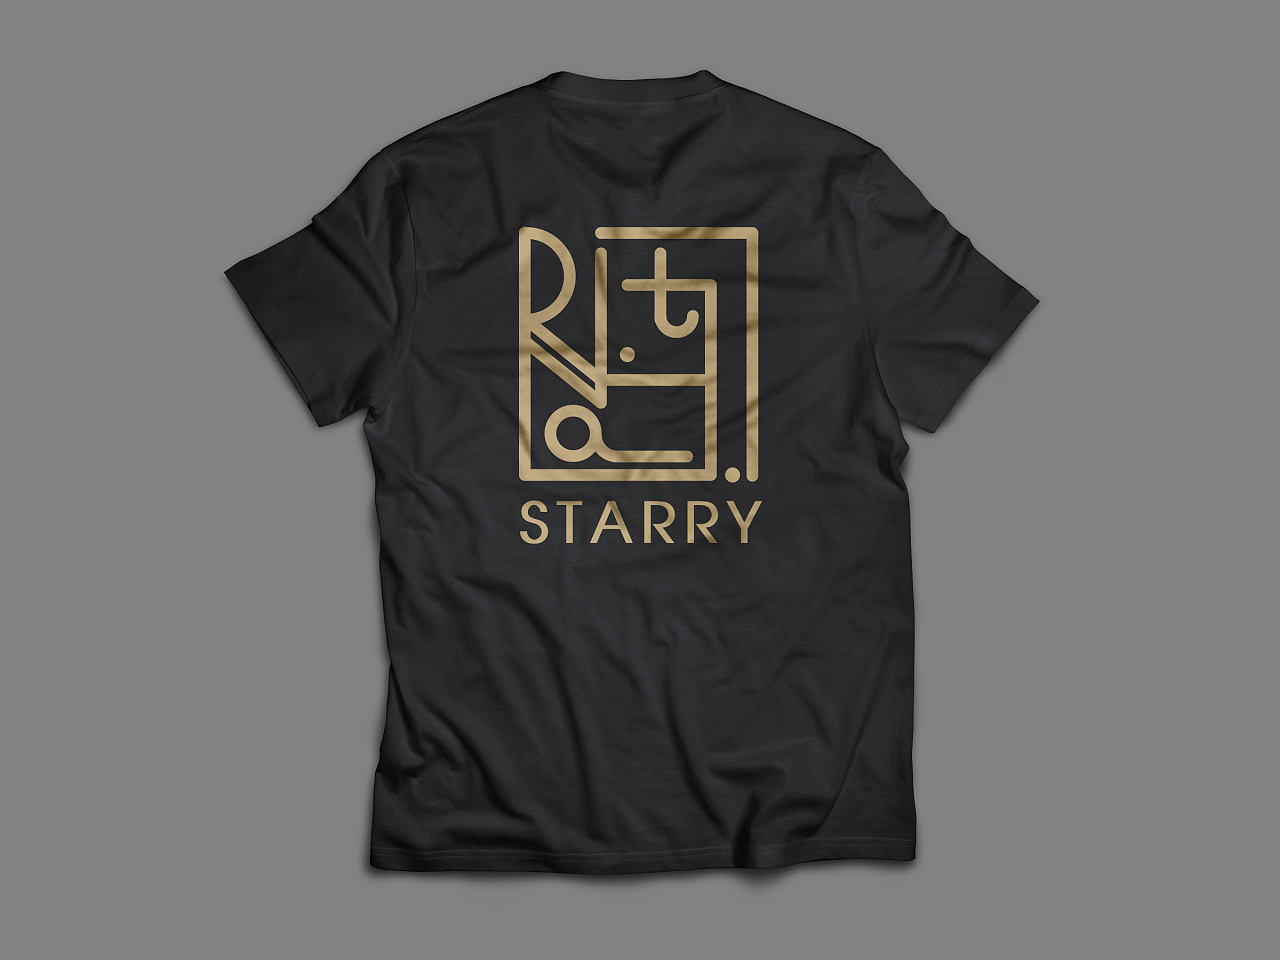 starry服装潮牌-品牌形象提案-logo设计及延伸